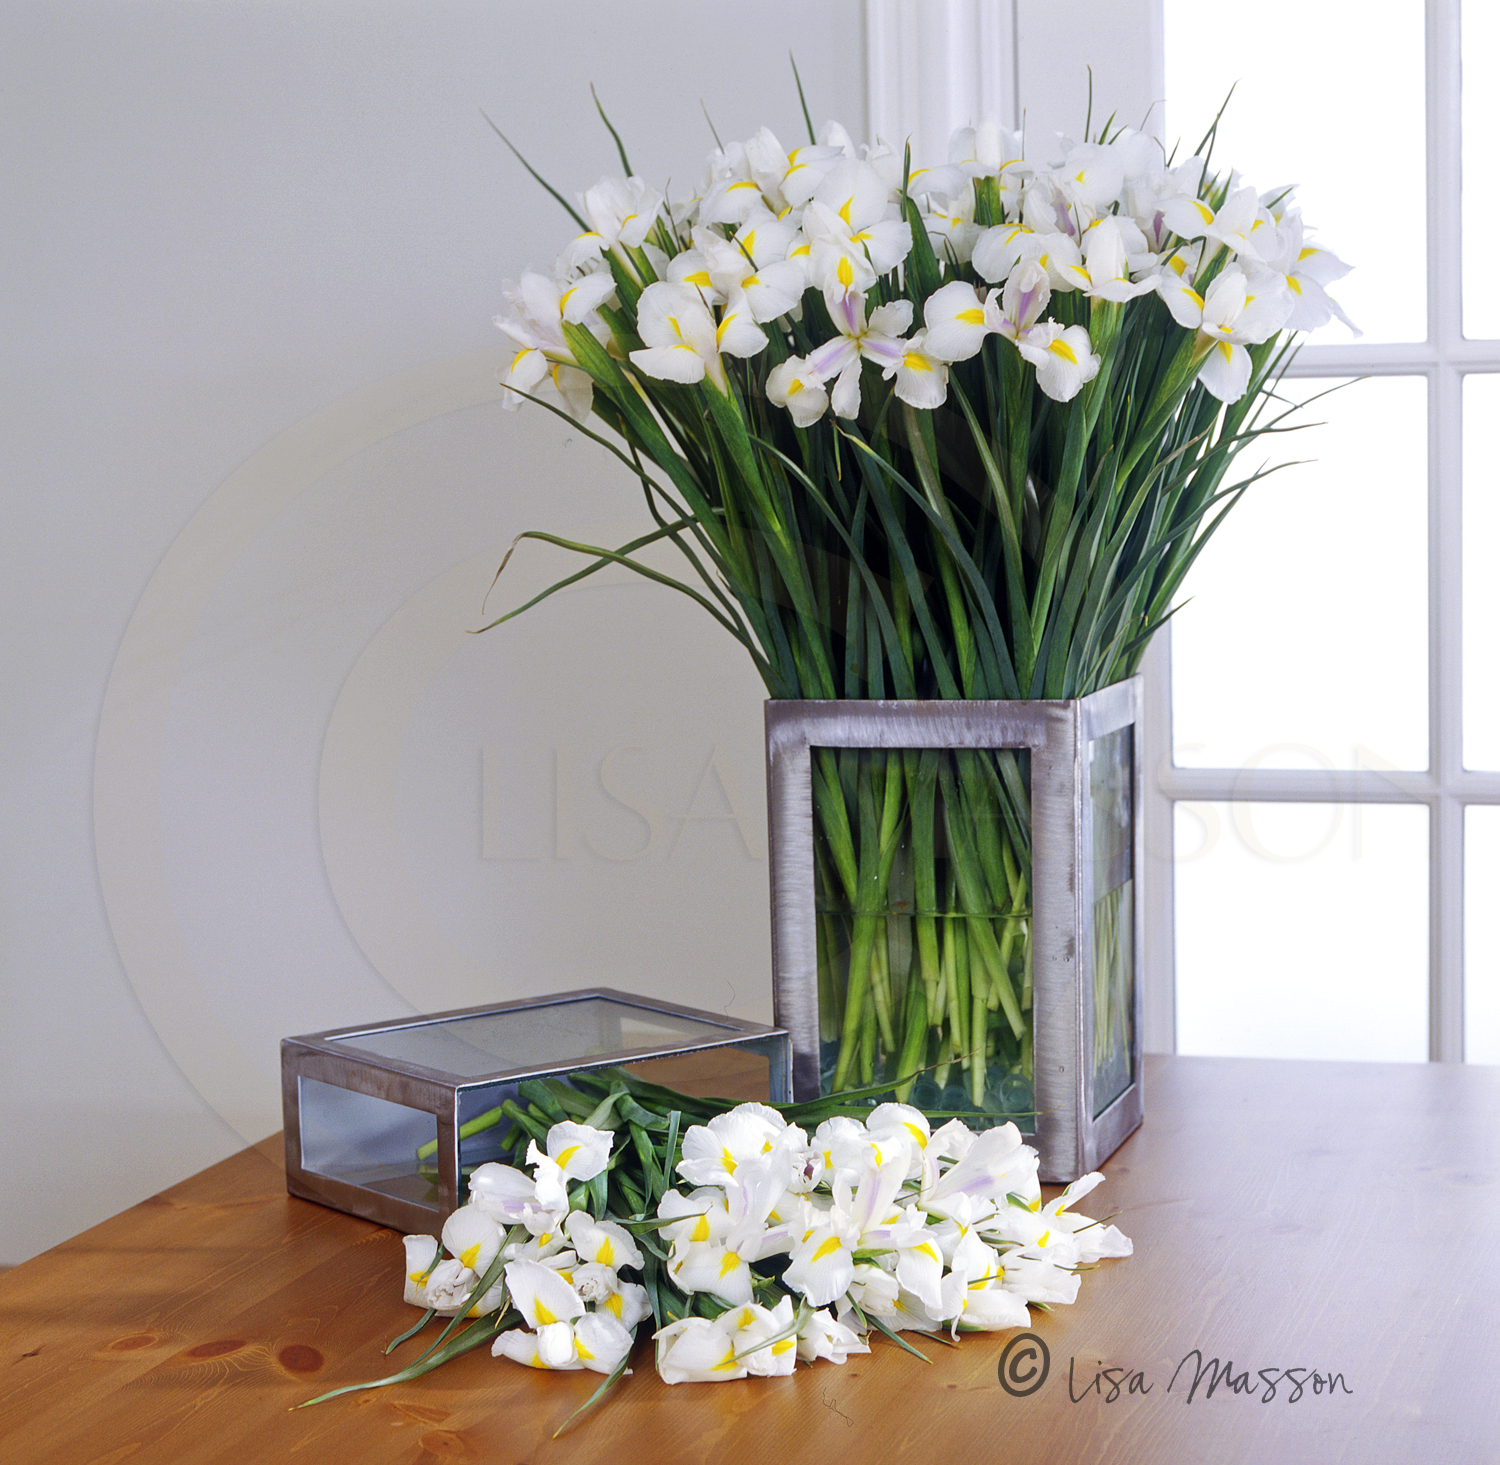 White Iris's ©.jpg